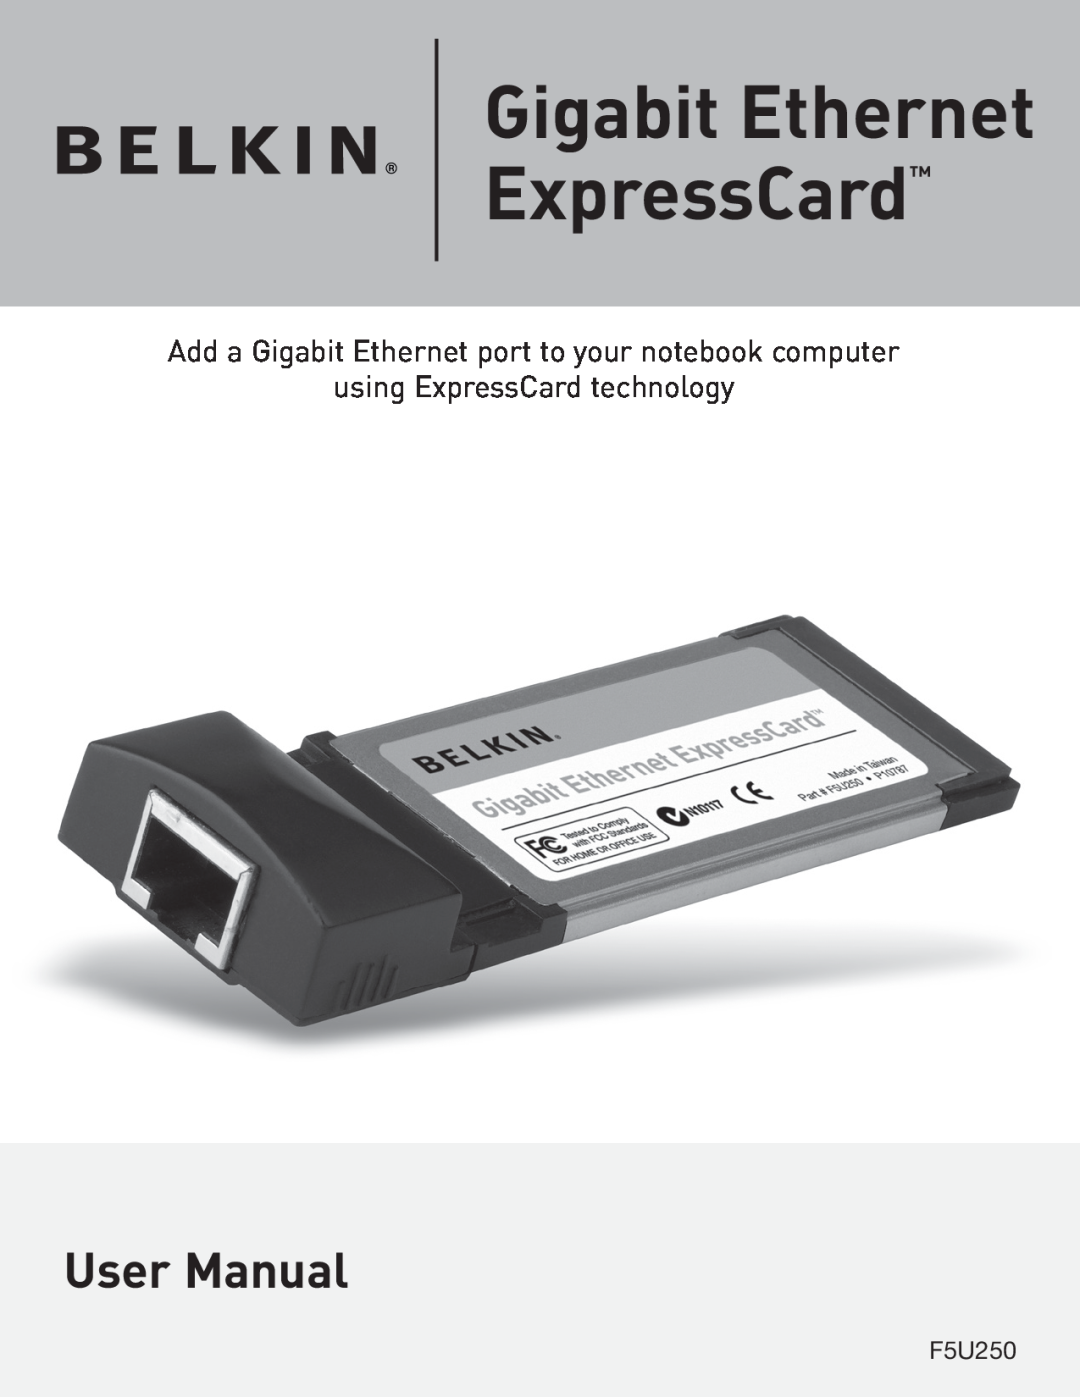 Belkin F5U250 manual Gigabit Ethernet ExpressCard, Add a Gigabit Ethernet port to your notebook computer 